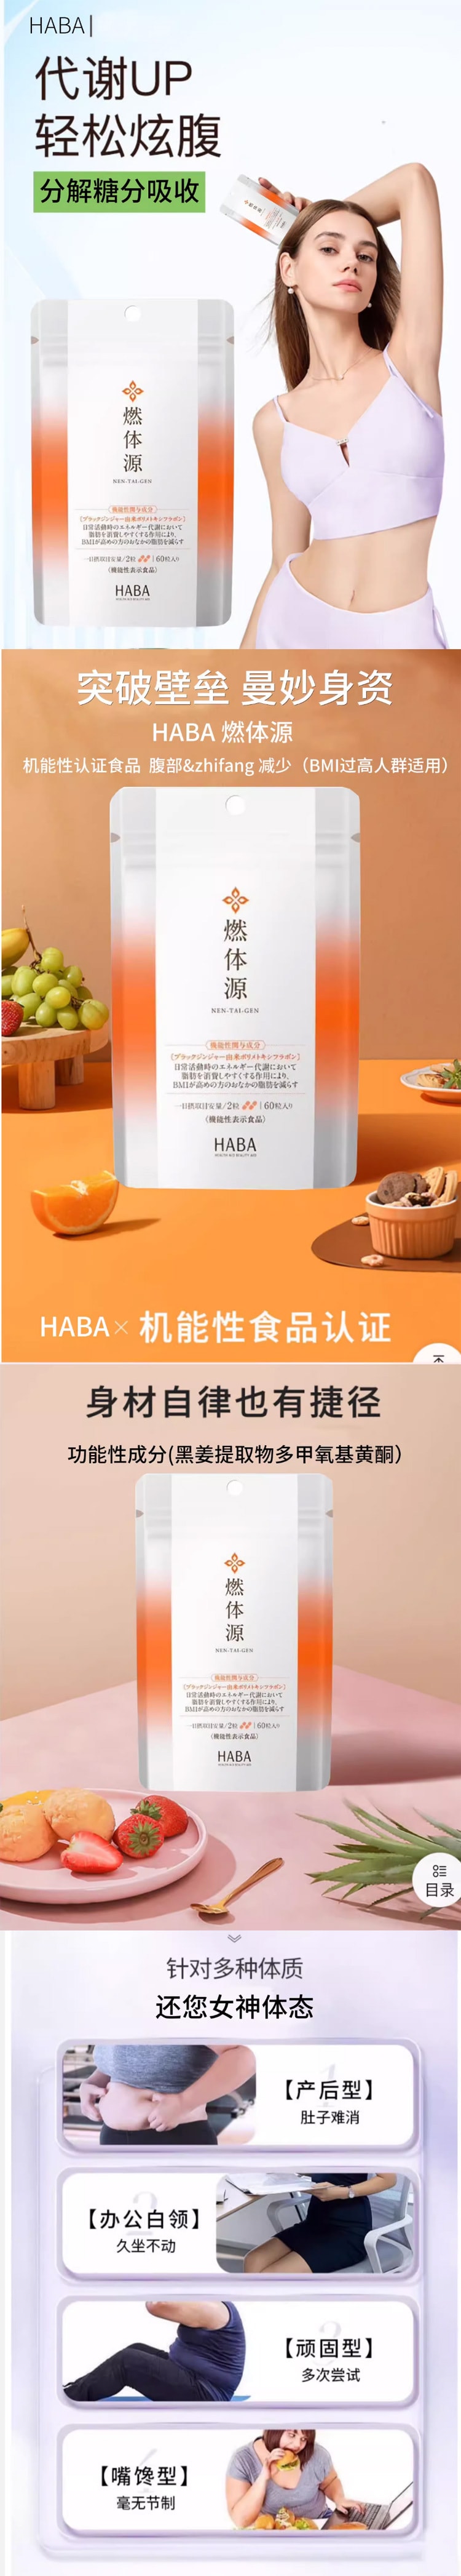 【日本直郵】HABA 燃體源 抑製糖分 排除油脂 減肥瘦身健康減脂控制體重 60粒